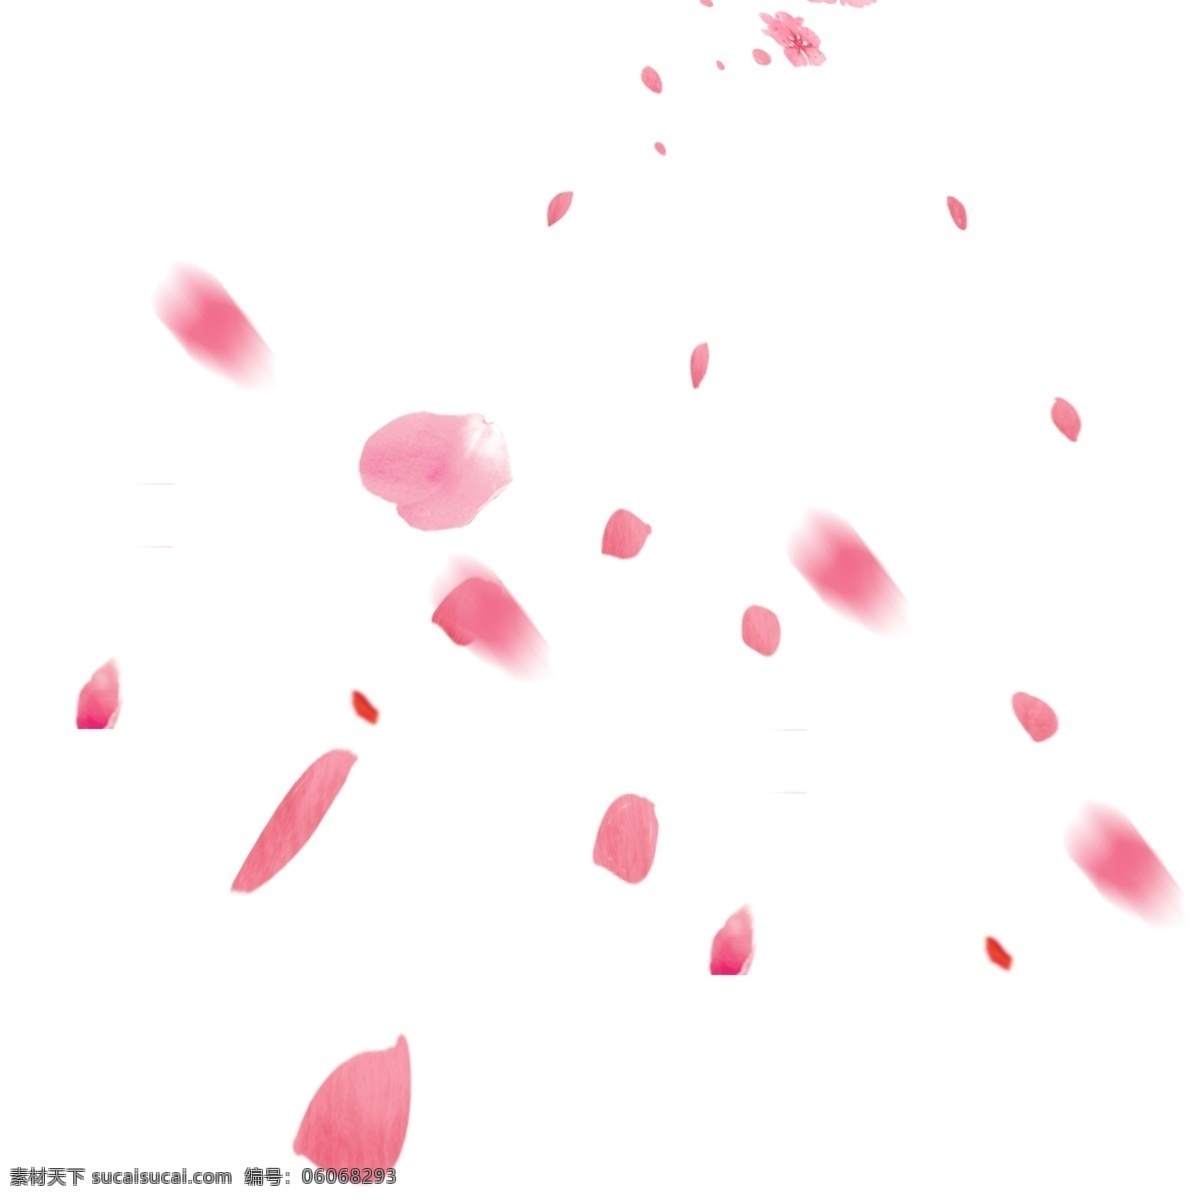 粉红色 花瓣 装饰 元素 玫瑰花 红色 婚礼 飘落 飘散 玫瑰 爱情 情人 玫瑰花瓣 花朵 浪漫 红色玫瑰花瓣